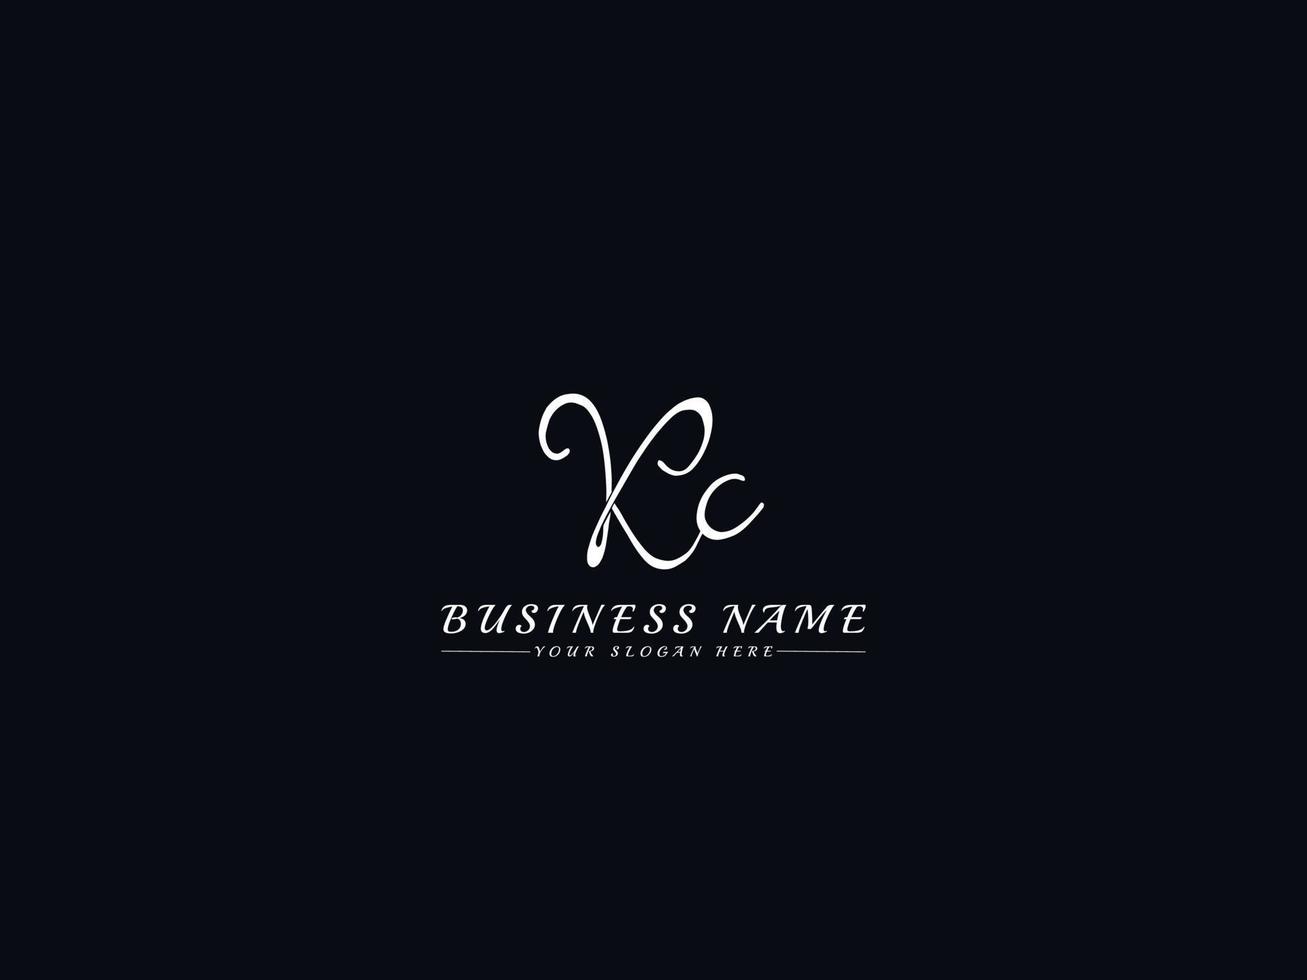 iniciales letra kc kc firma plantilla de logotipo vector